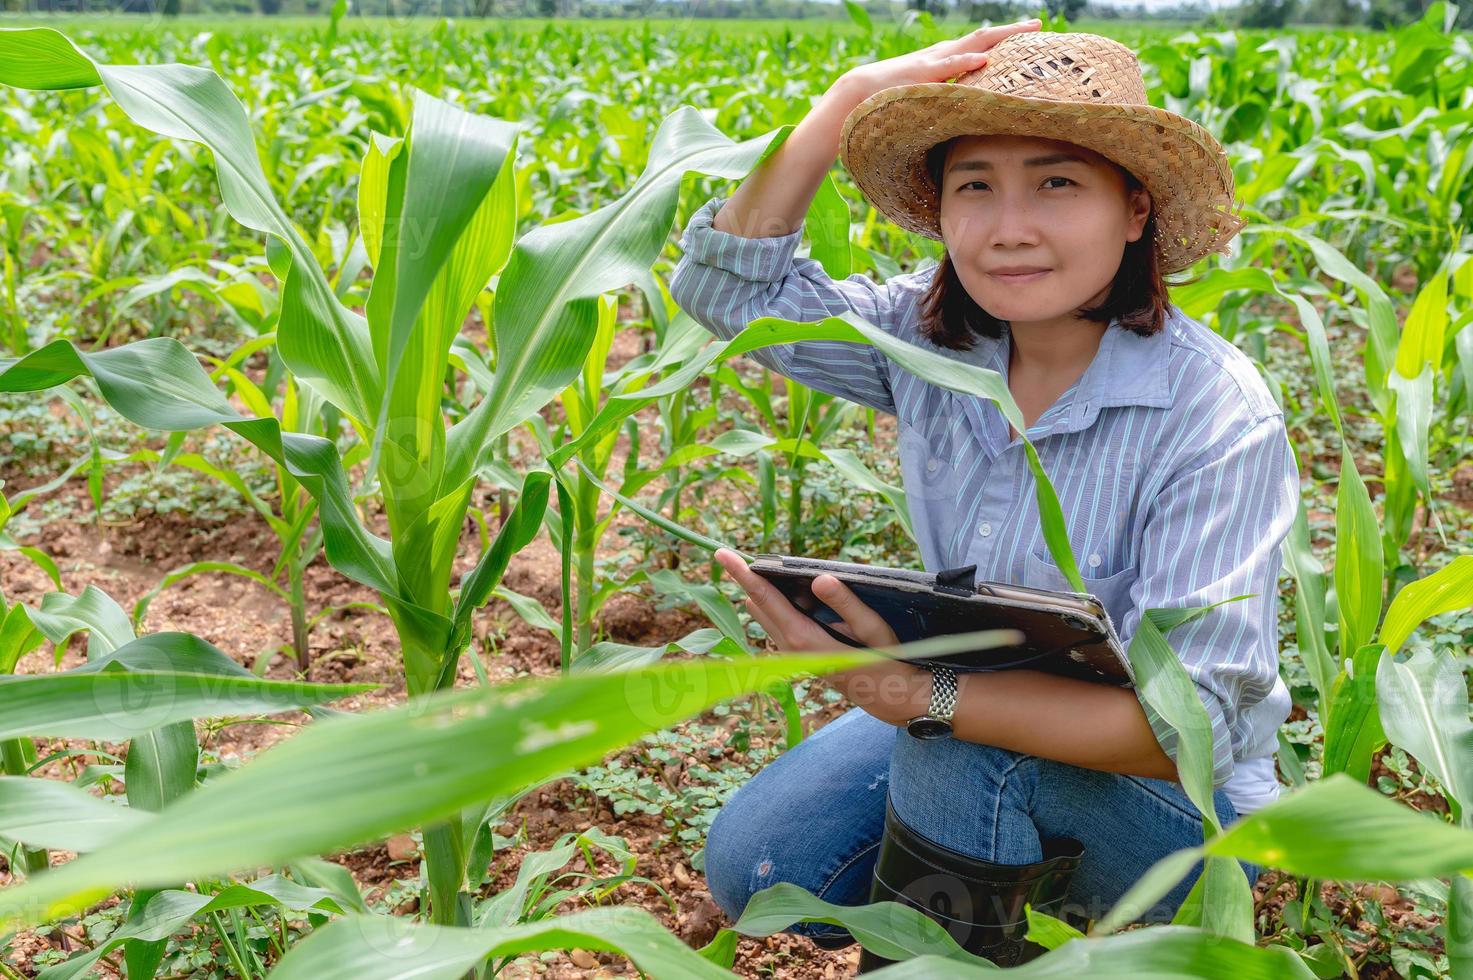 femelle agriculteur travail à blé ferme, collecte Les données sur le croissance de blé les plantes photo